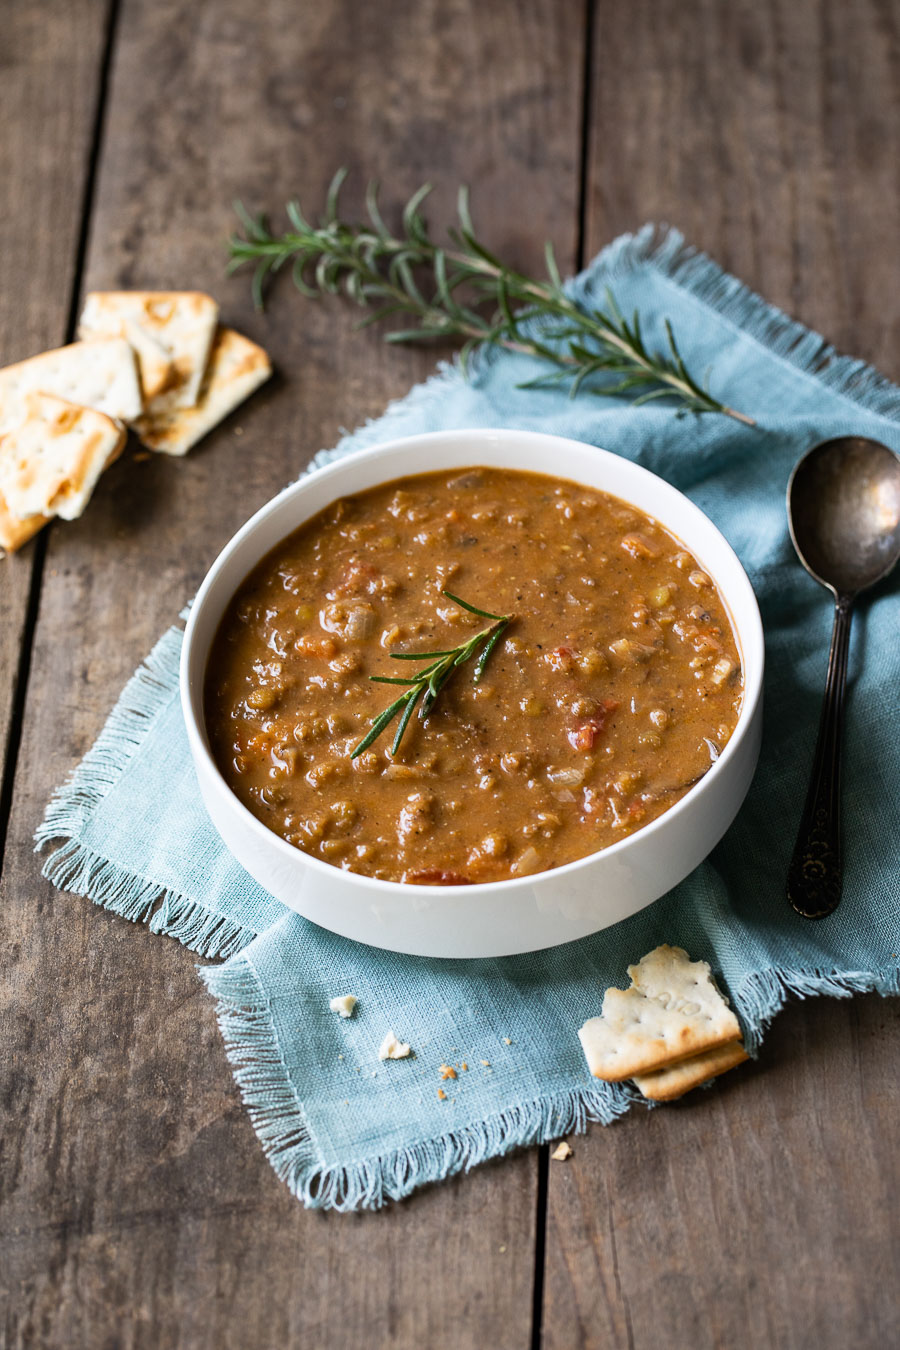 Healthy Vegan Lentil Soup - One Pot Lentil Soup